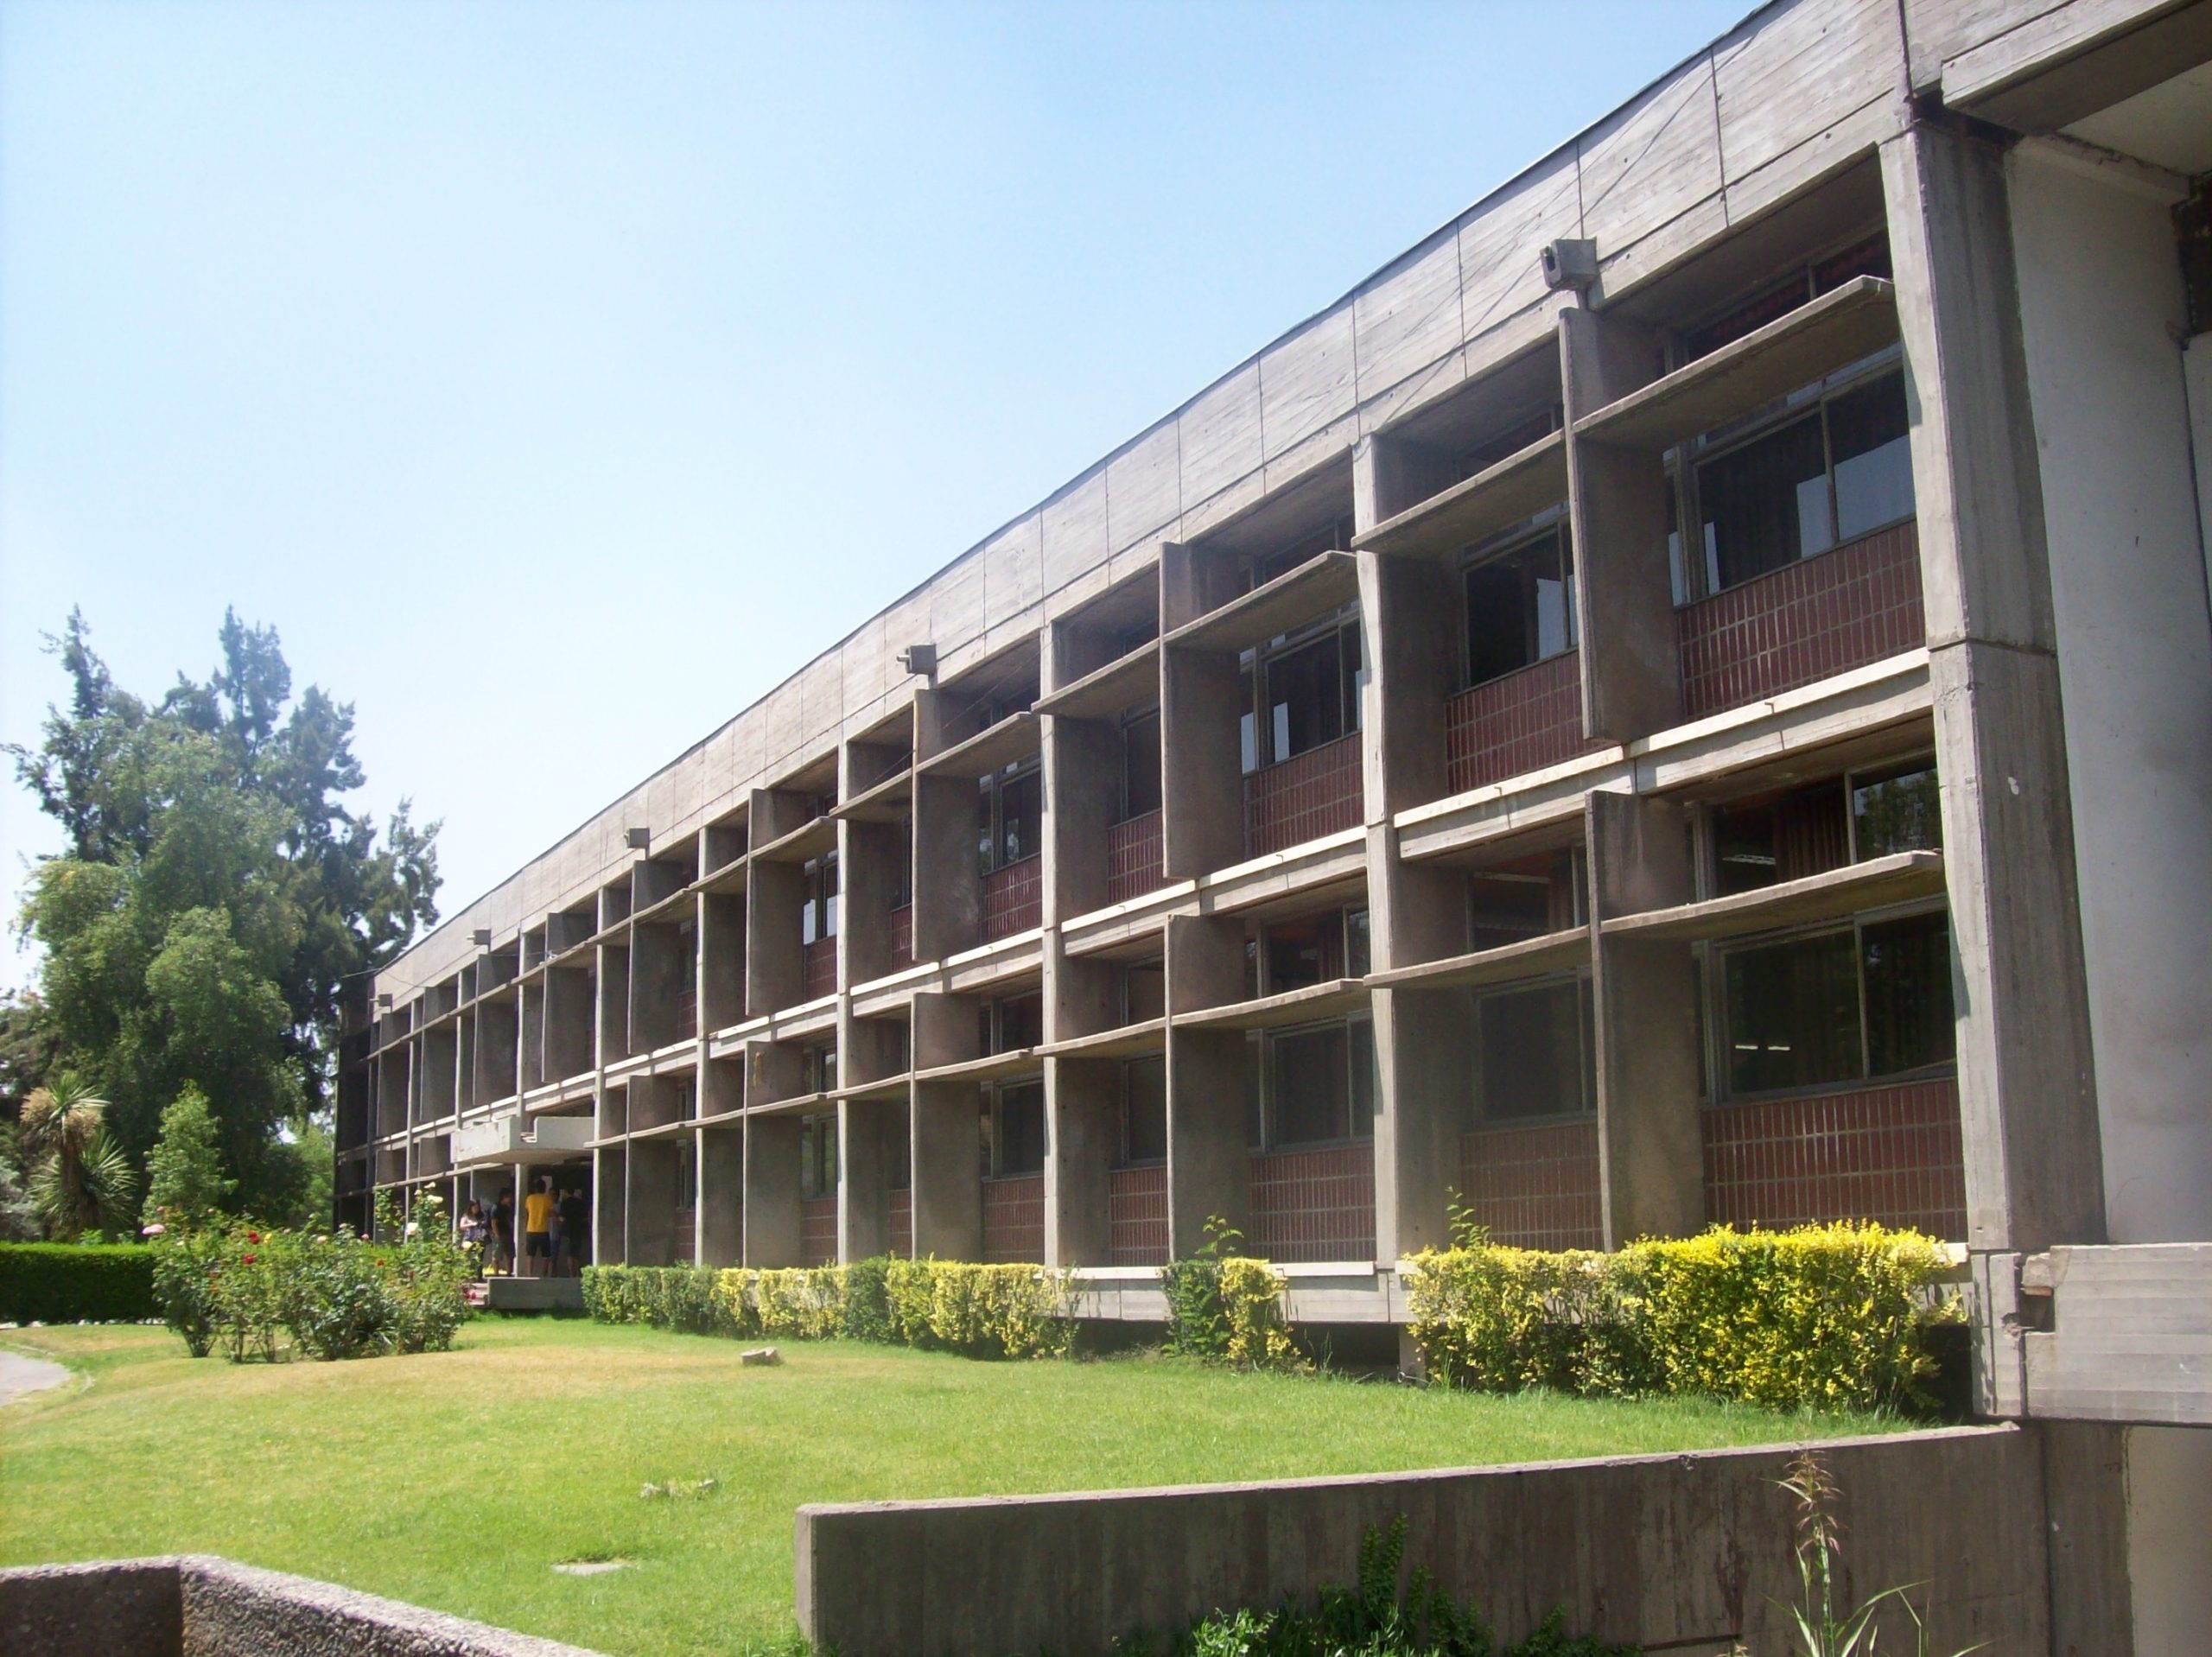 Construcción en hormigón armado Facultad Agronomía Universidad de Chile, 1967